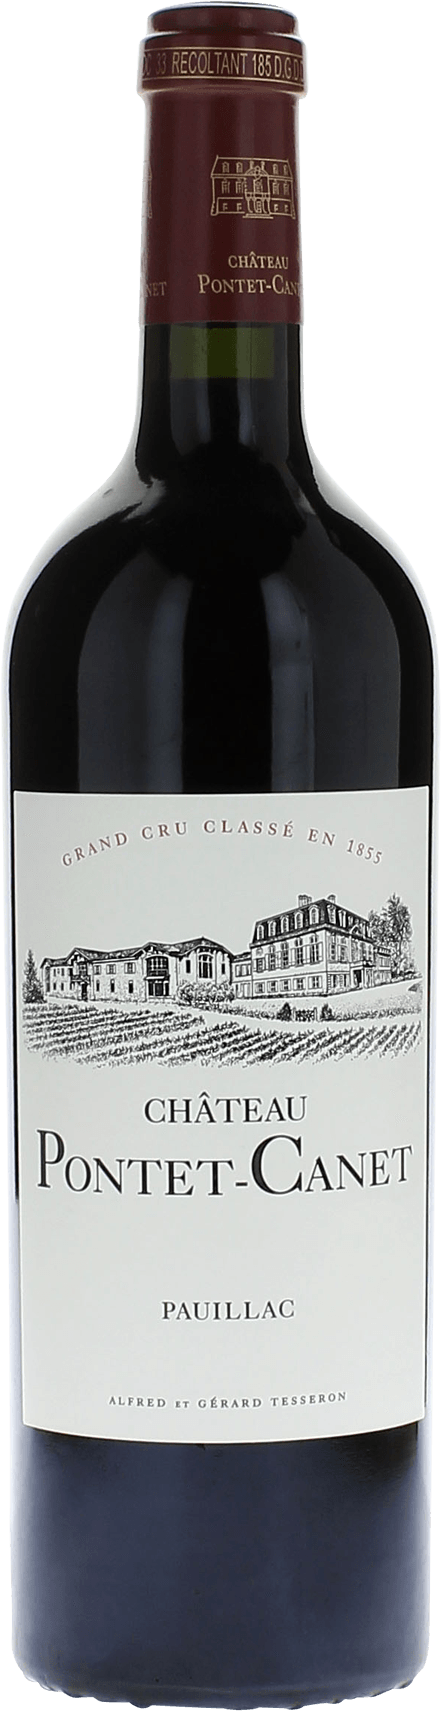 Pontet canet 2001 5me Grand cru class Pauillac, Bordeaux rouge